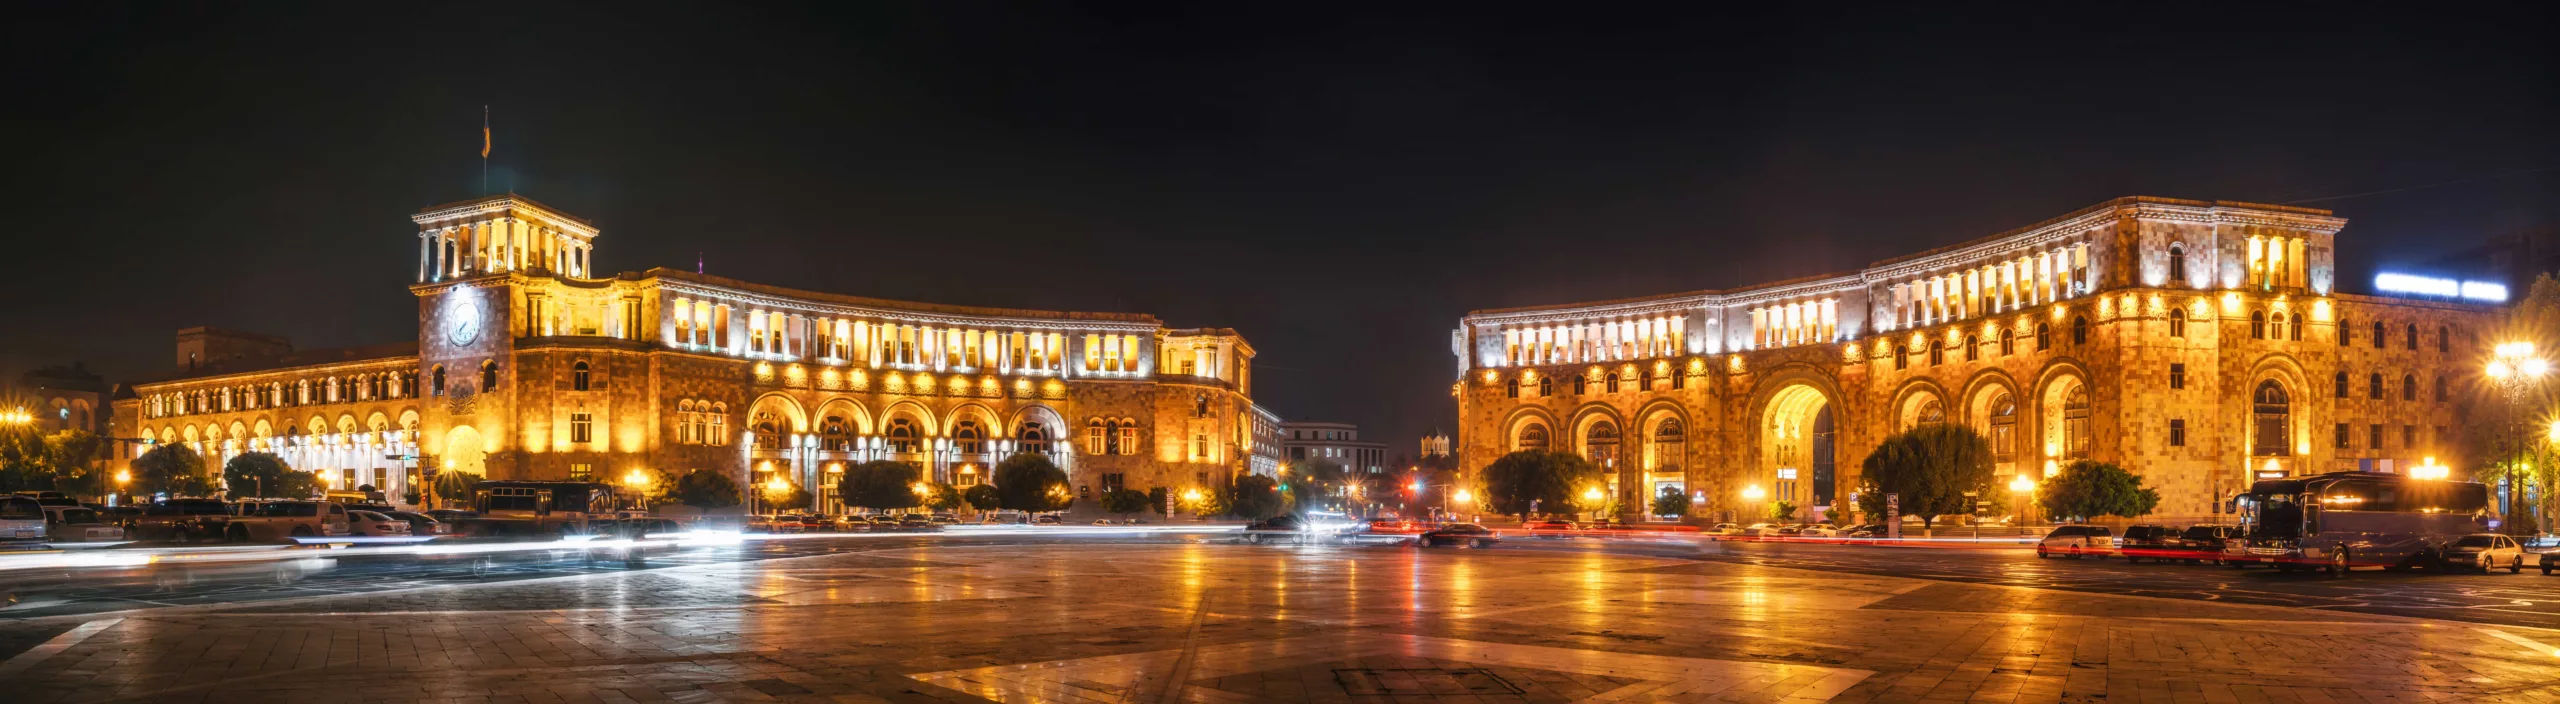 المعالم السياحية في أرمينيا (يريفان)